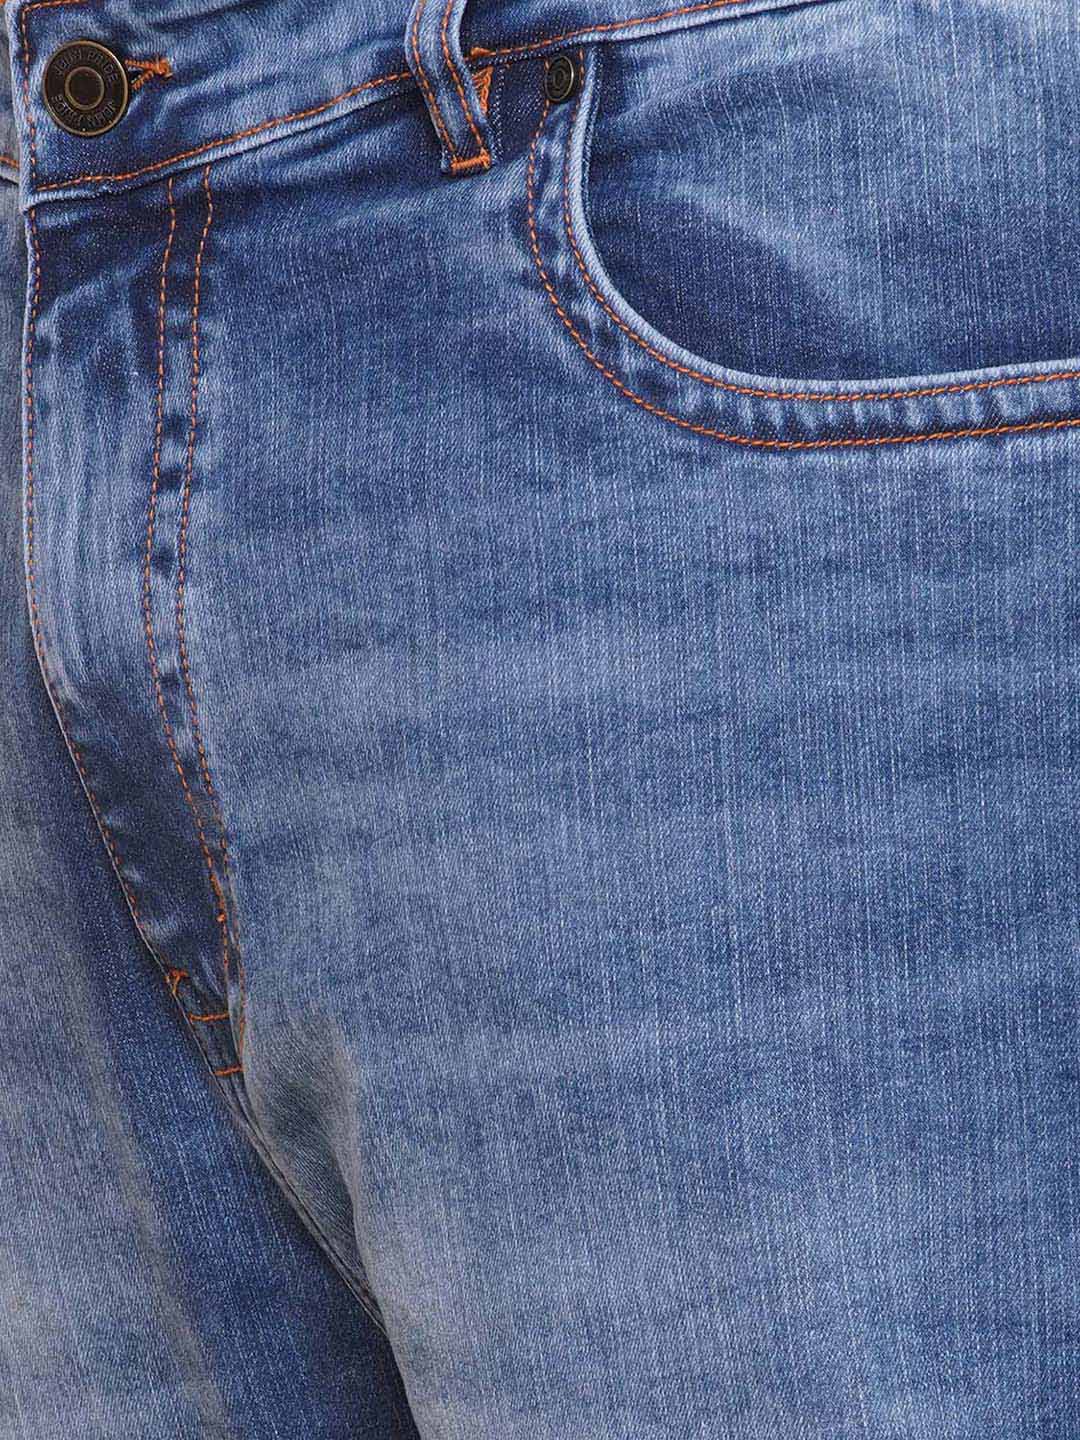 bottomwear/jeans/PJPJ60113/pjpj60113-2.jpg